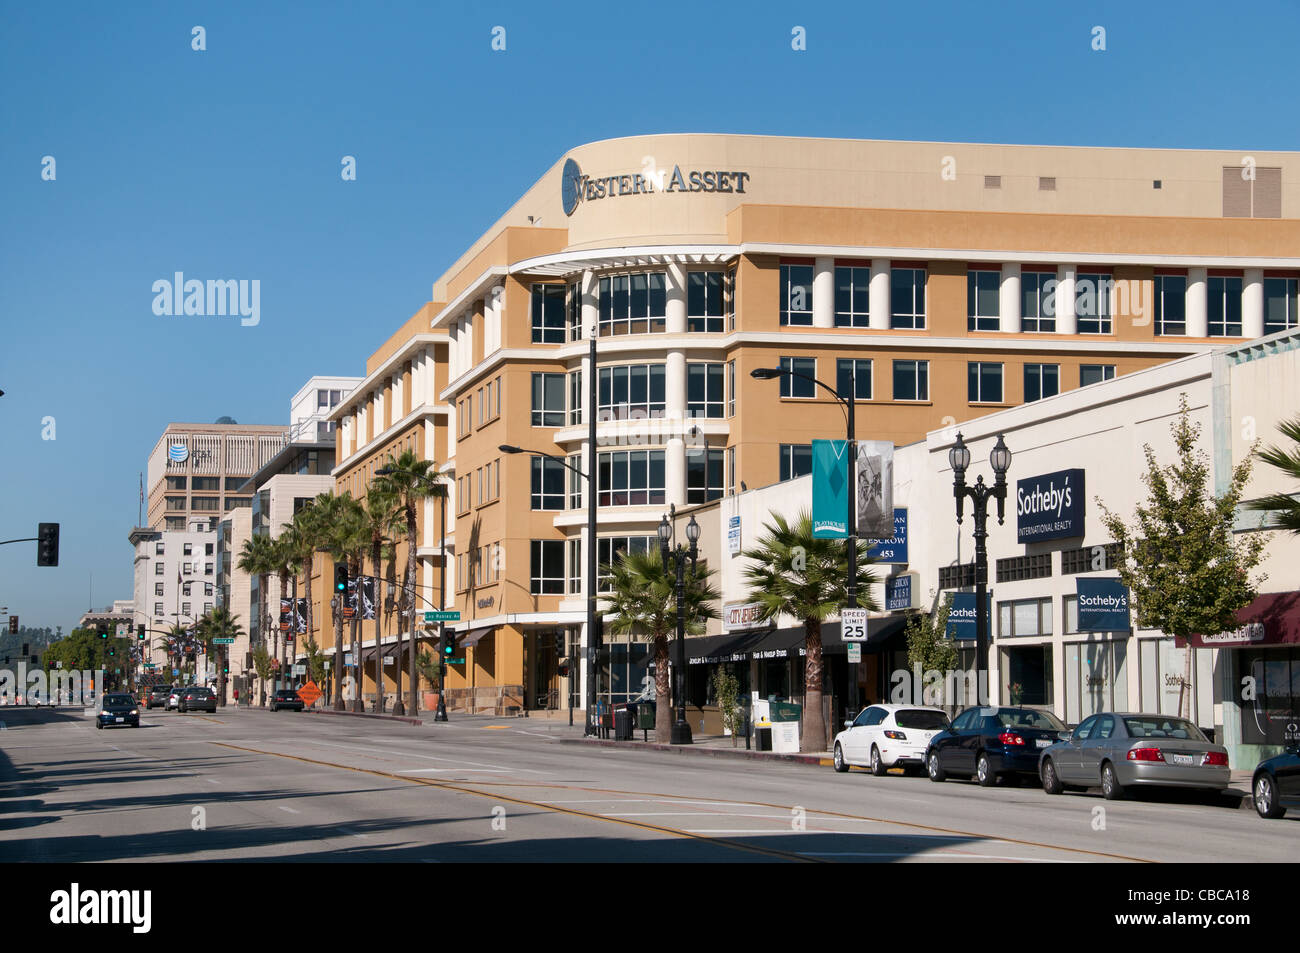 Western Asset Pasadena California Estados Unidos - Los Angeles Foto de stock